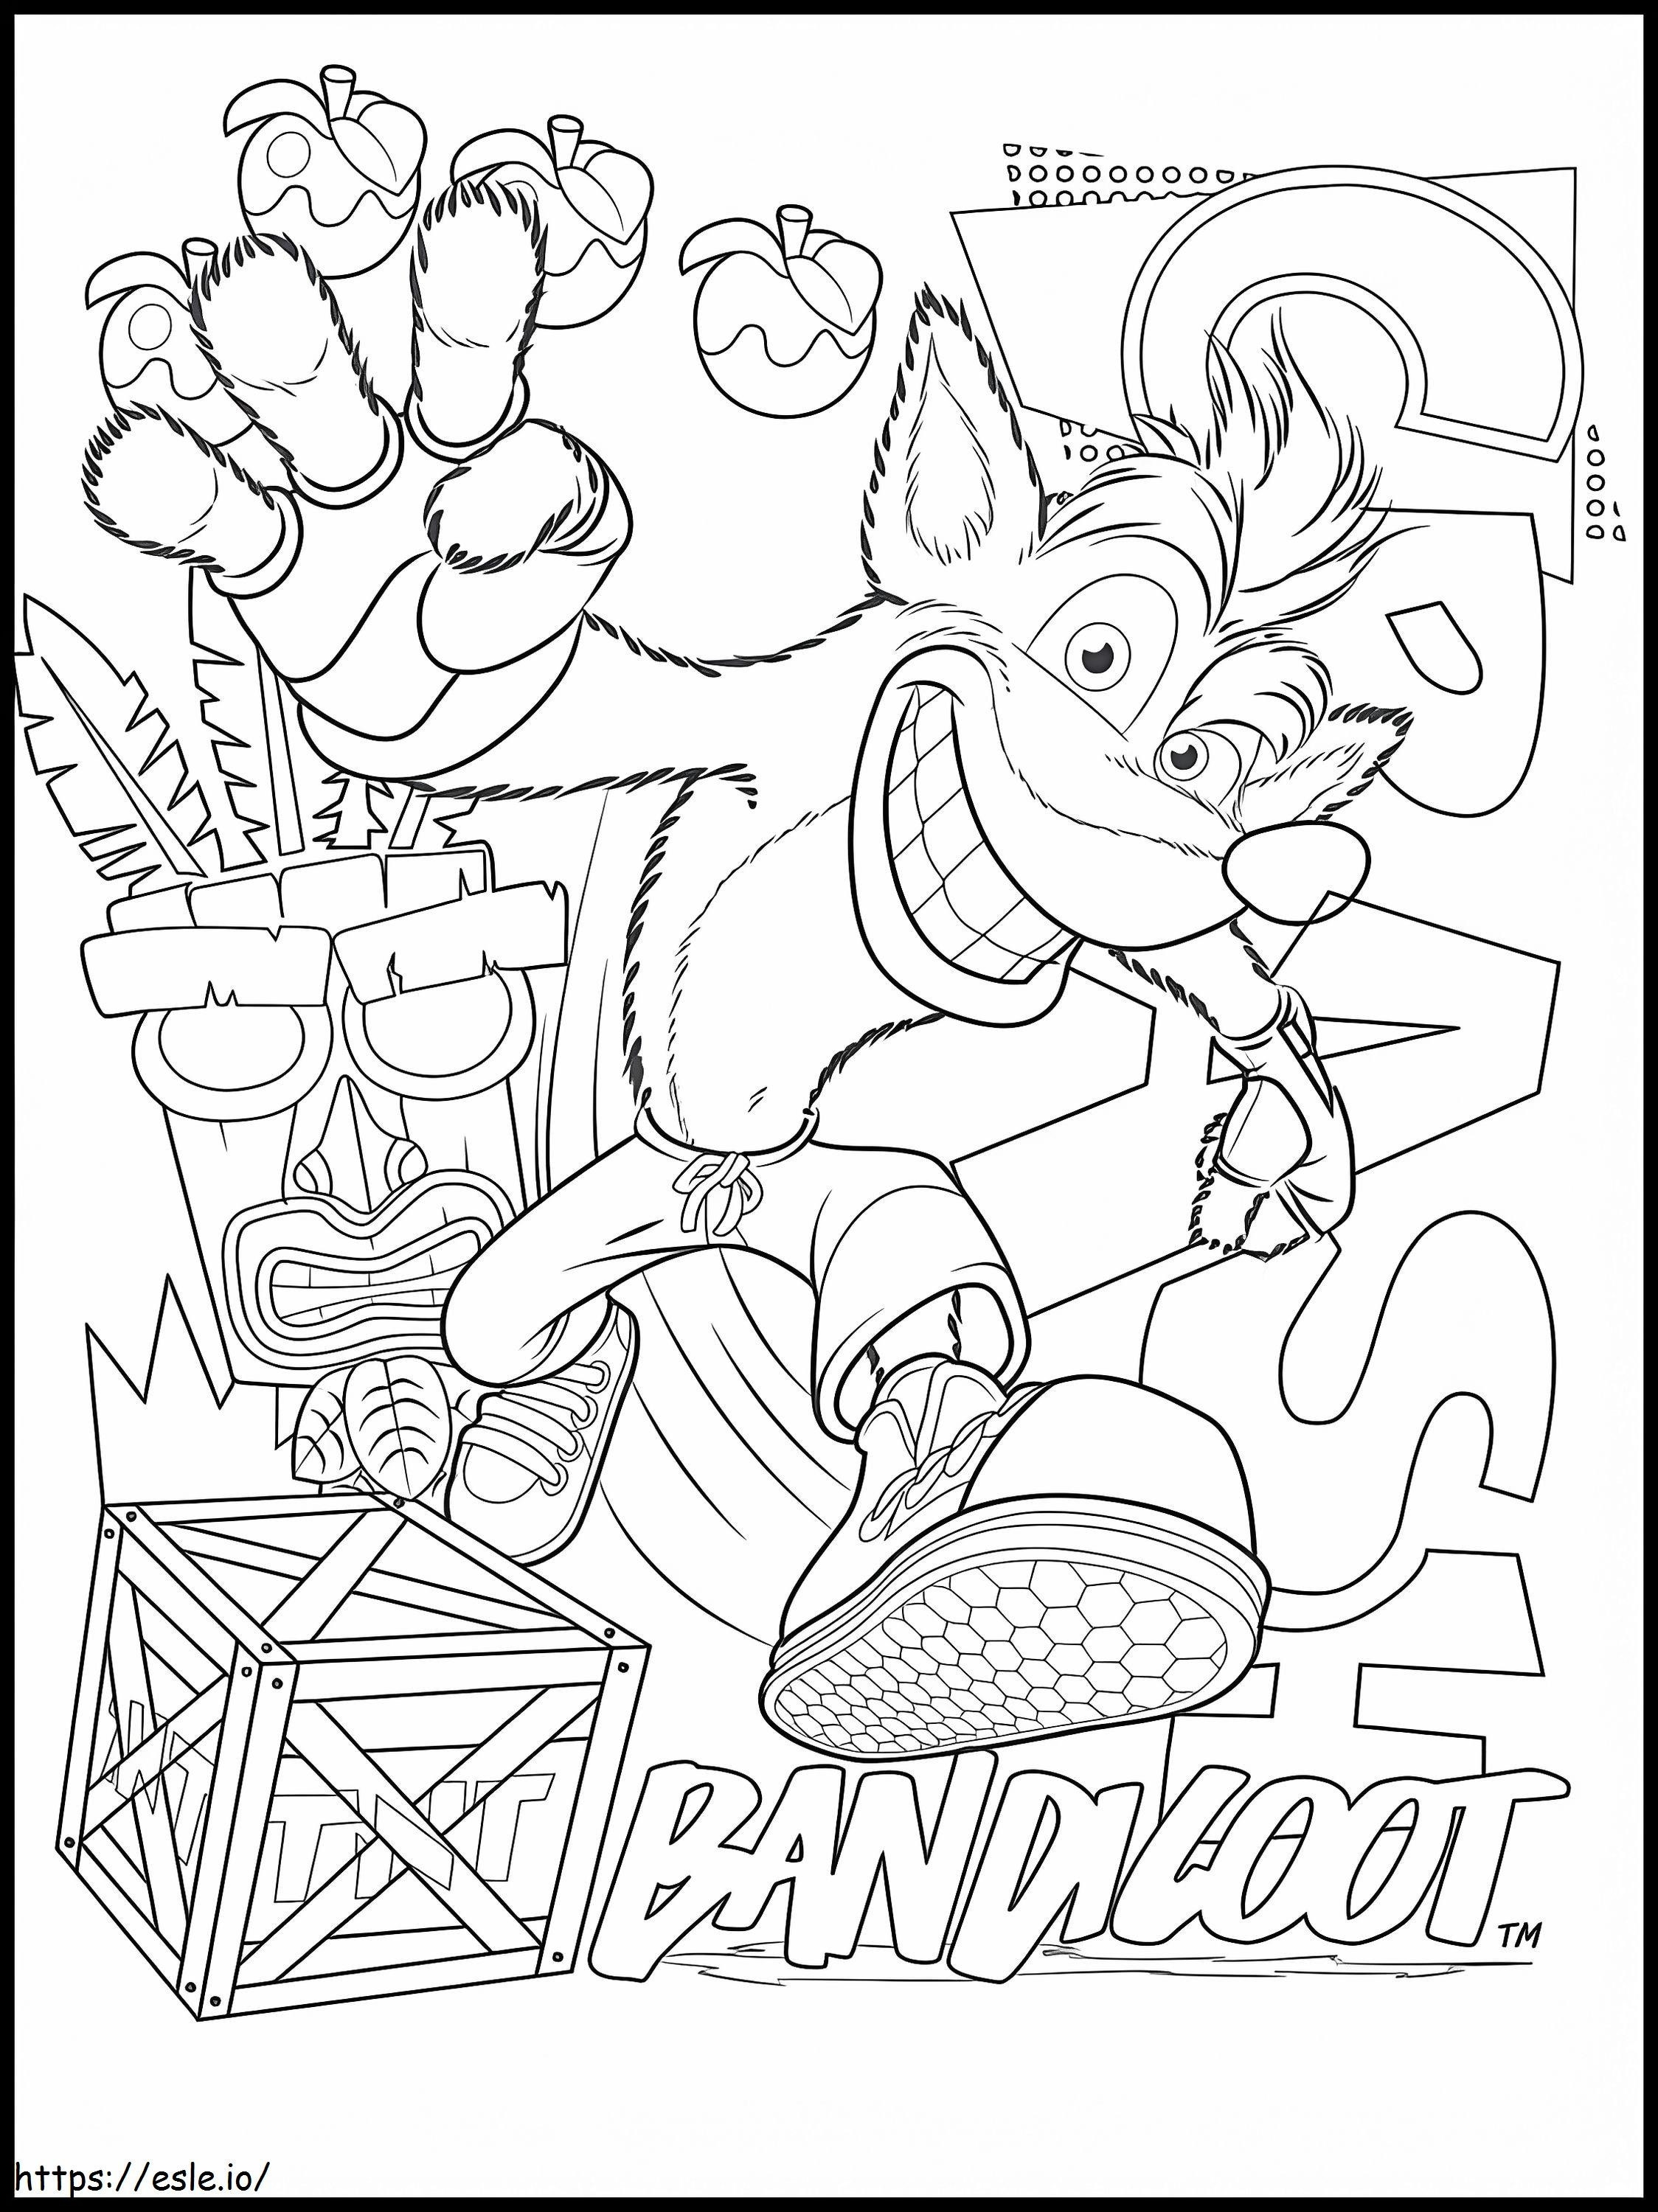 Crash Bandicoot 4 kolorowanka